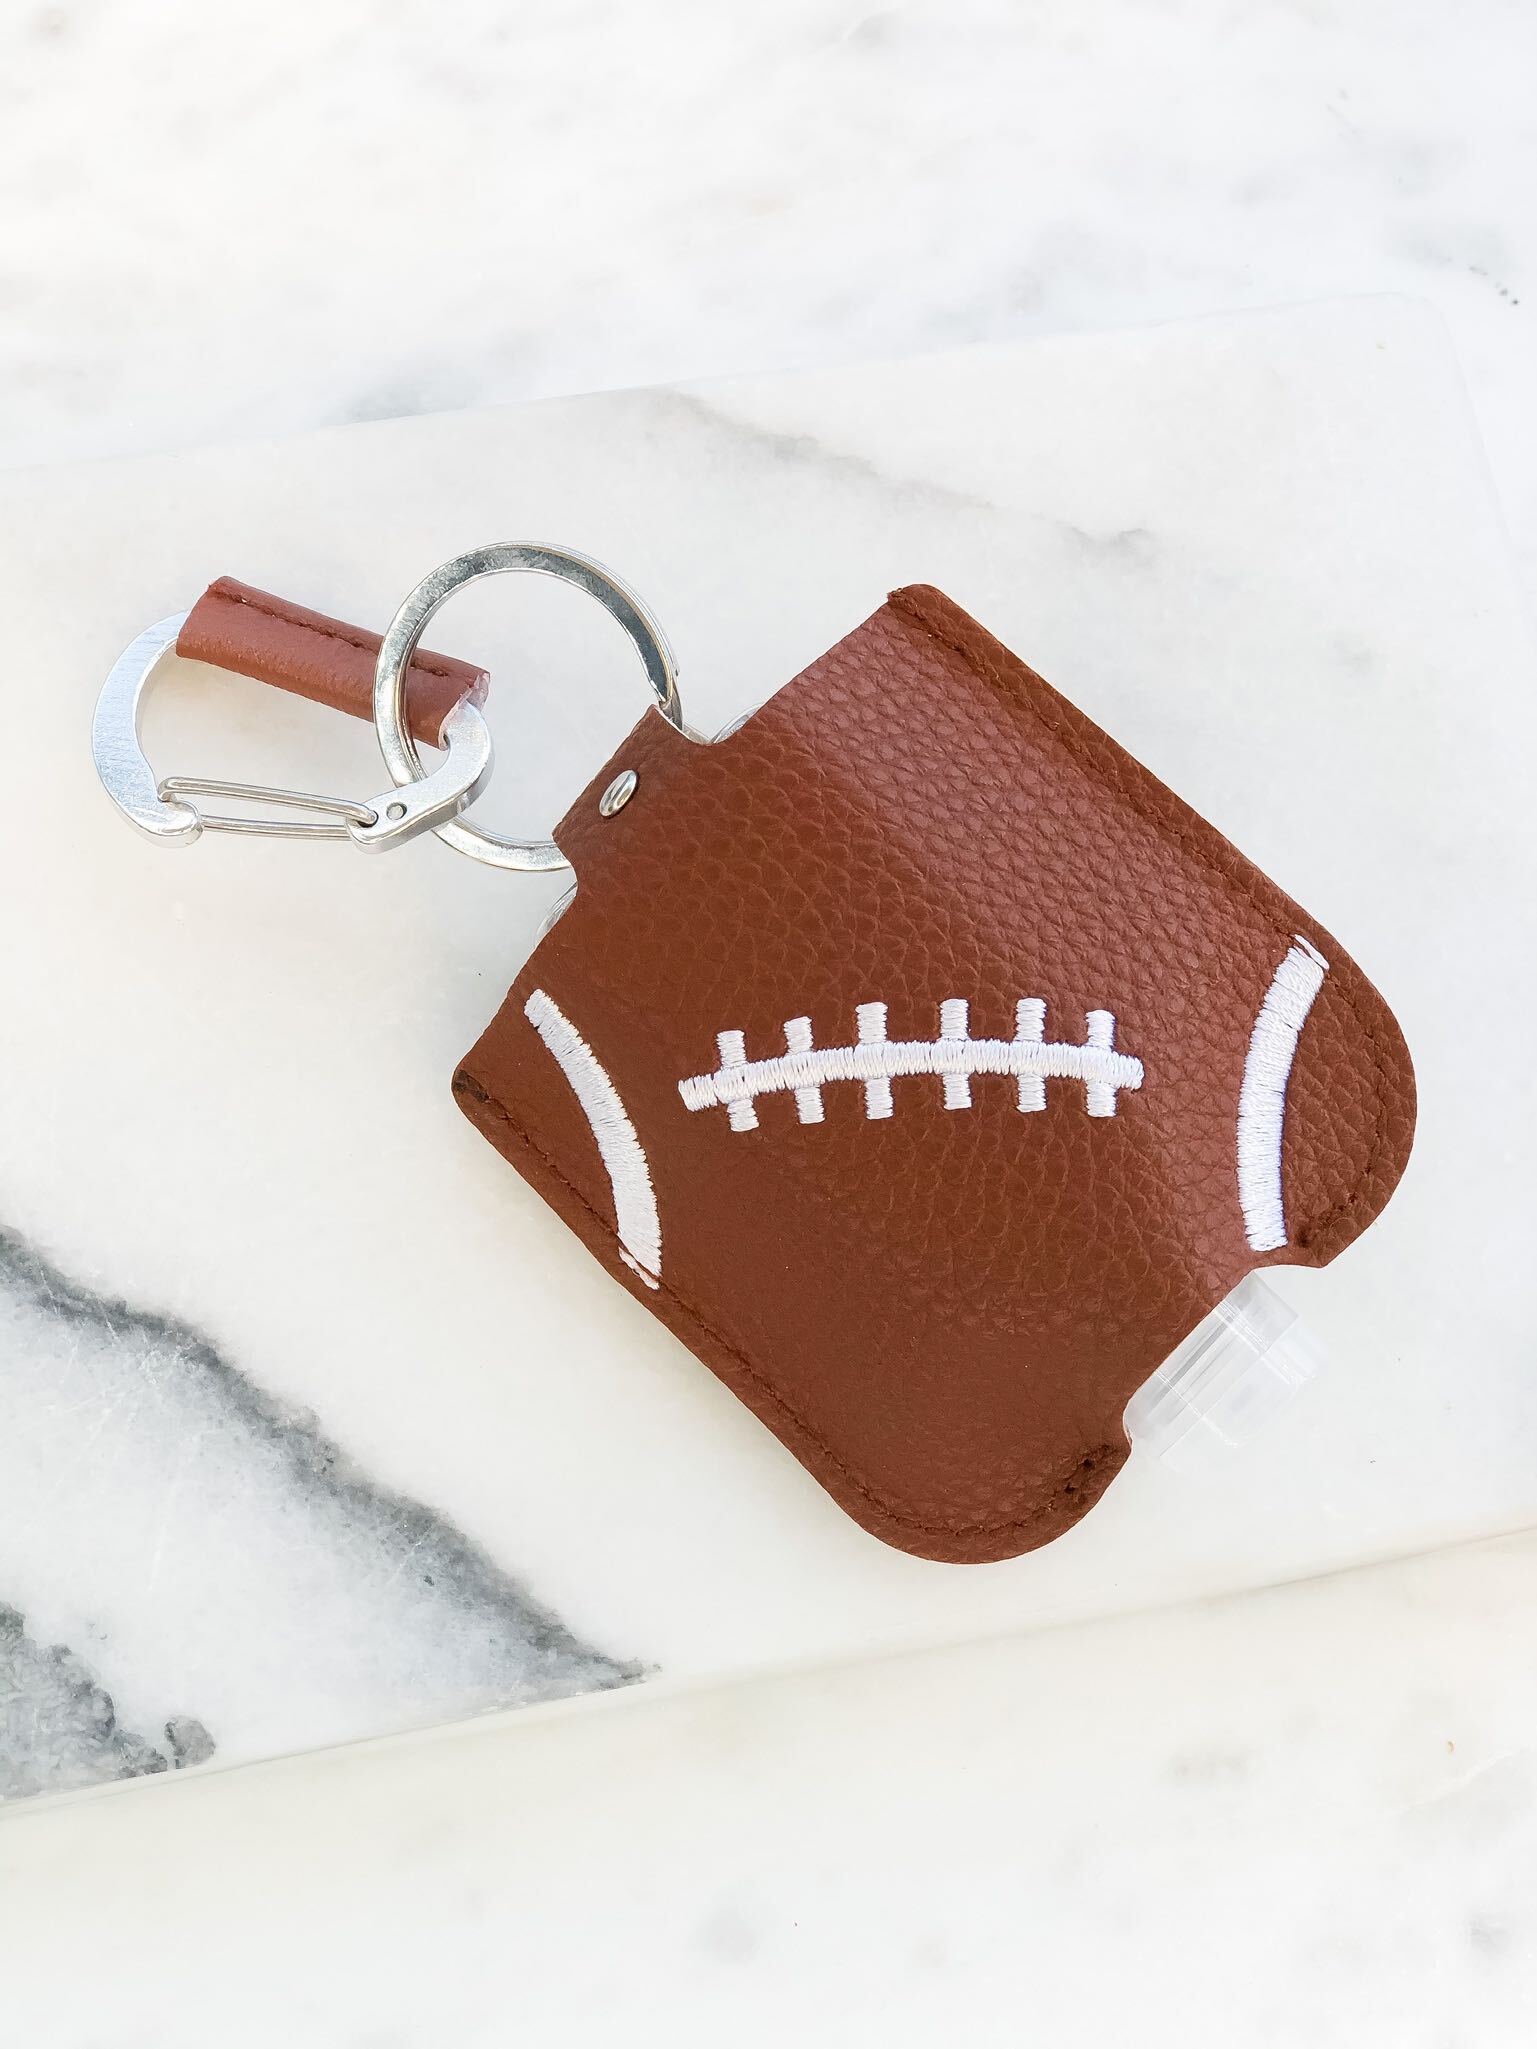 Hand Sanitizer & Air Pod Case Key Chain - Football